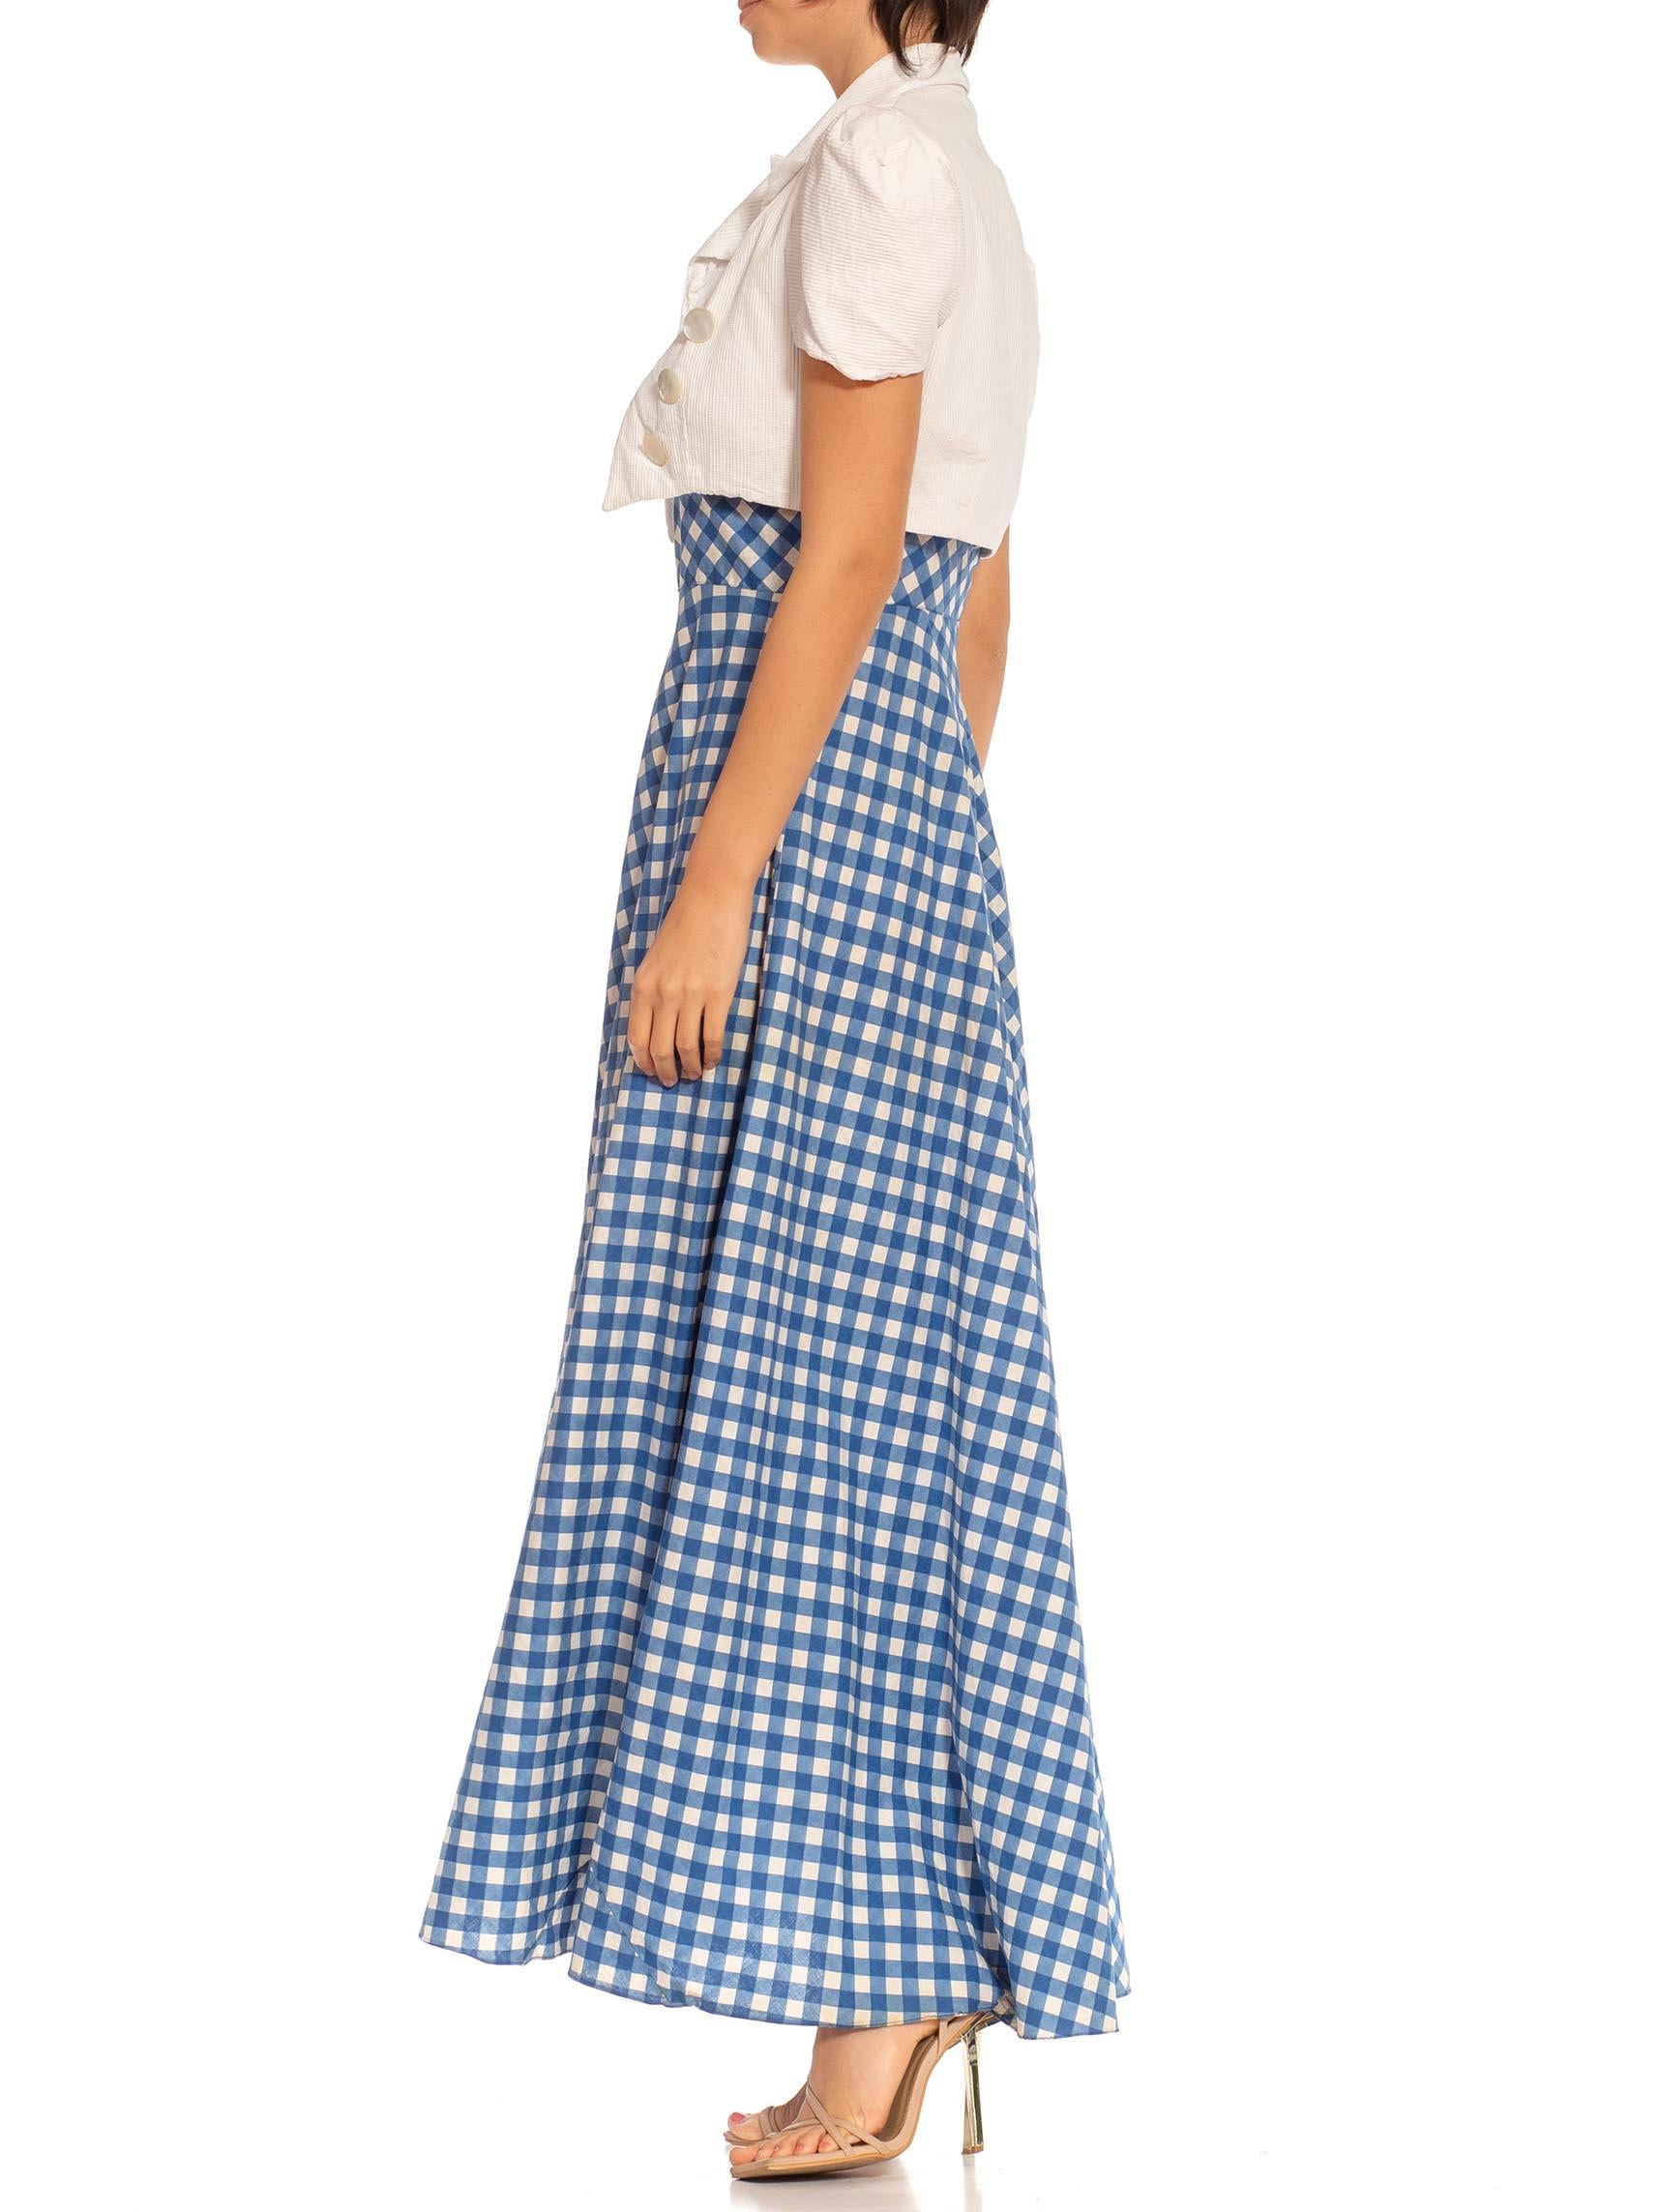 1930s skirt